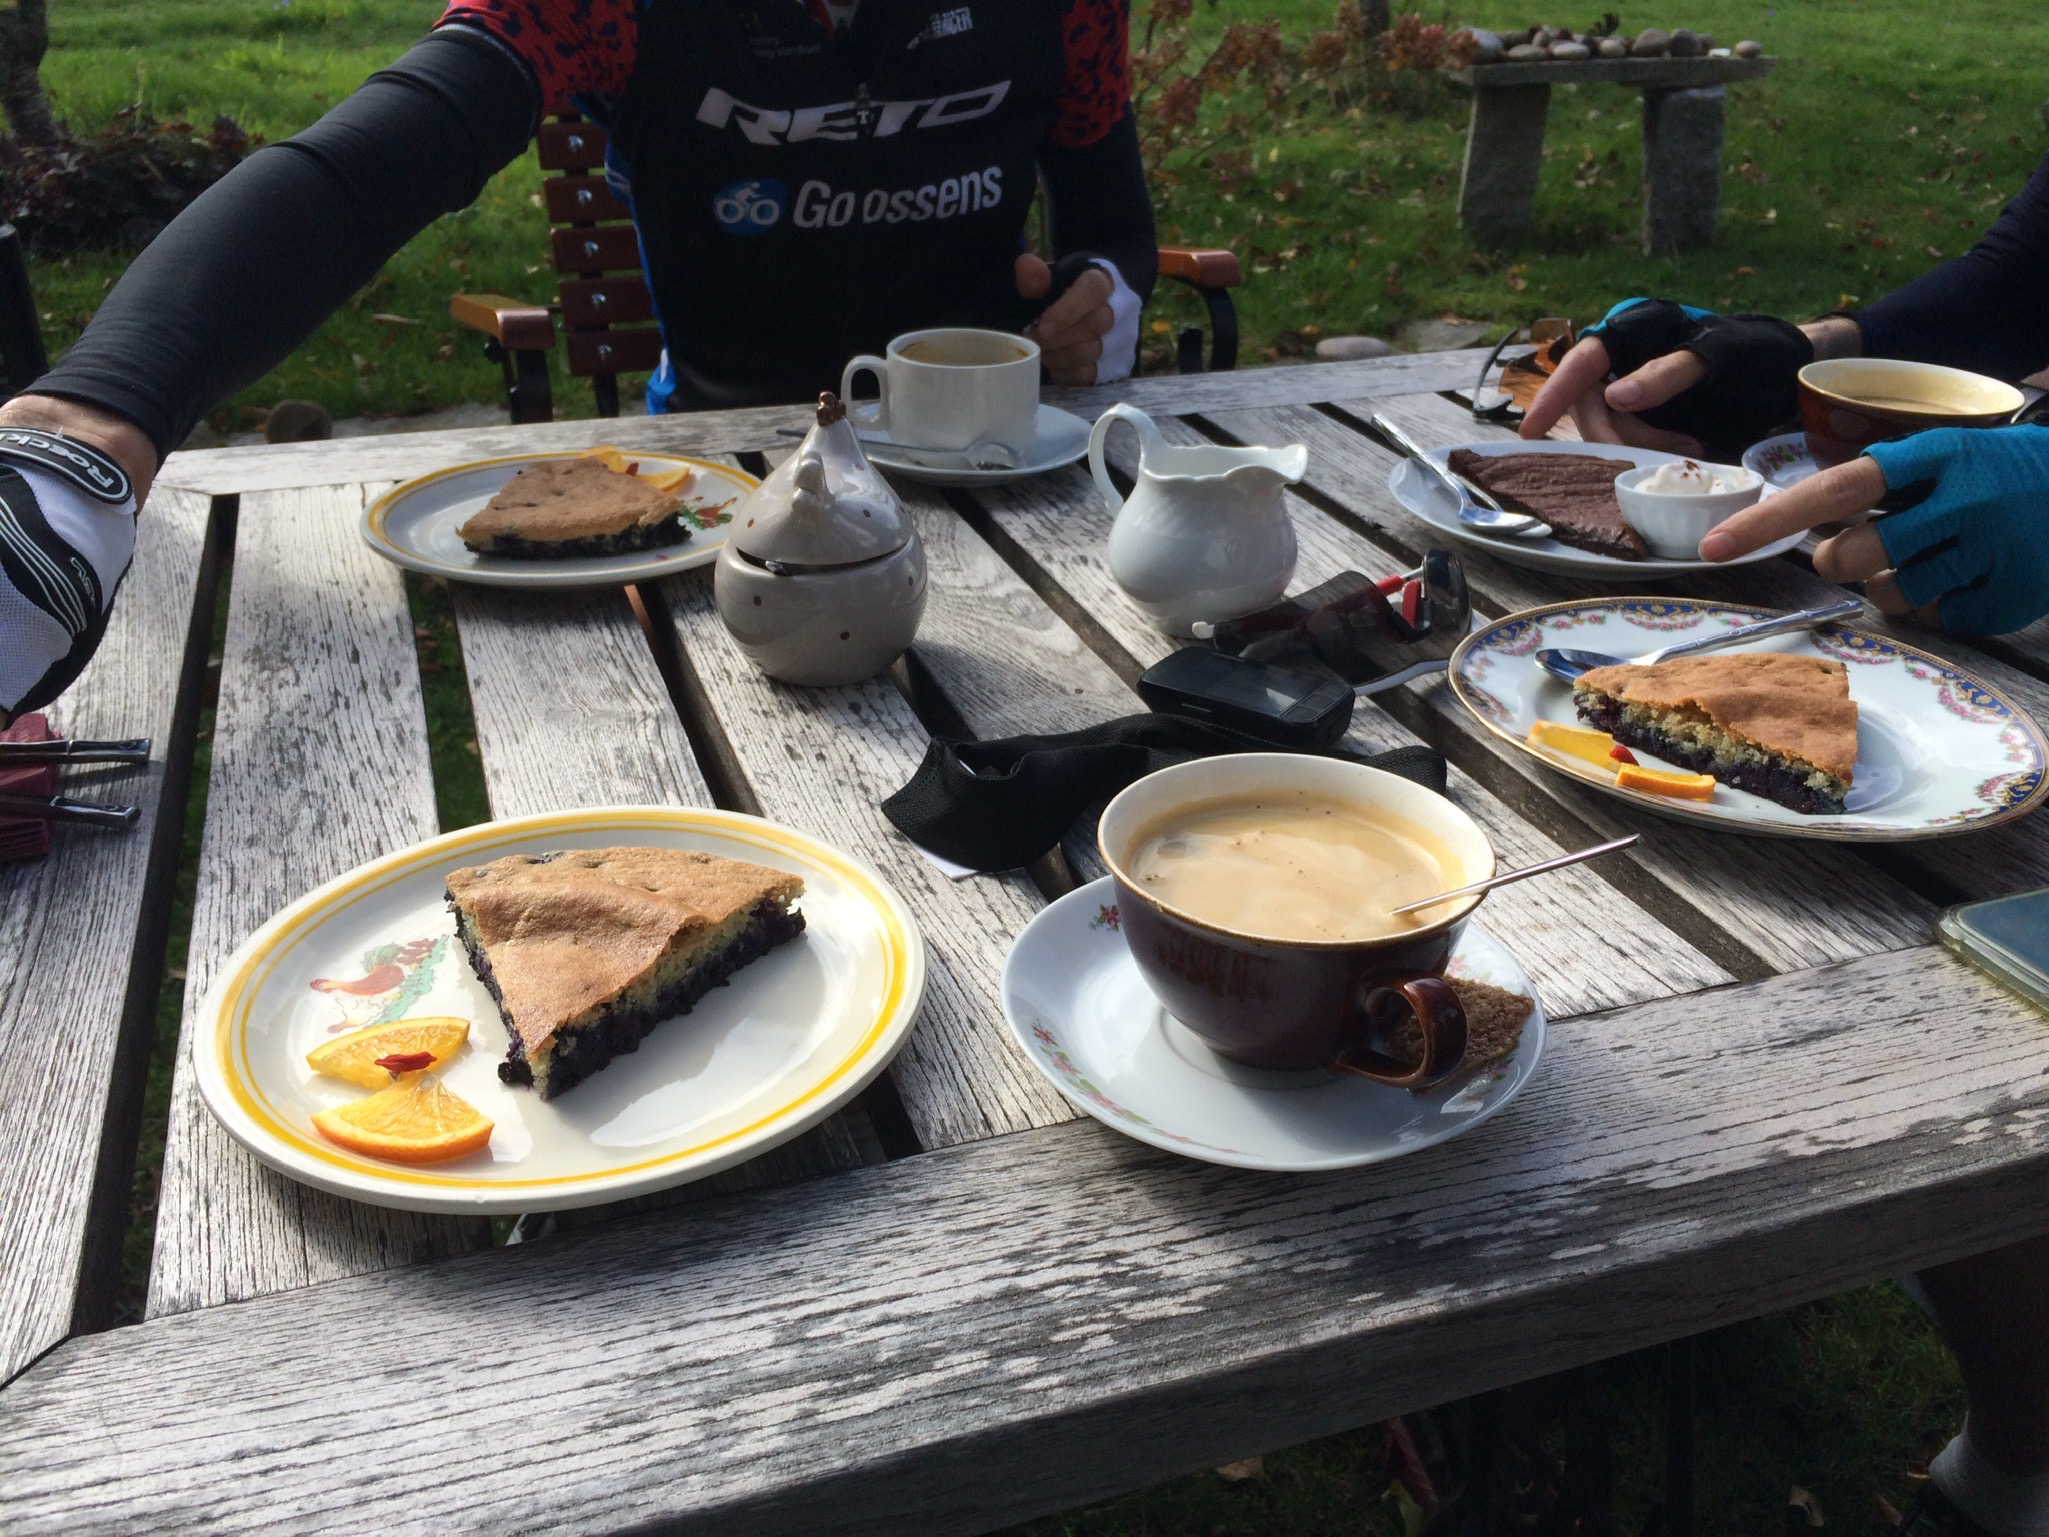 Koffie en gebak op houten tafel in tuin met fietsattributen